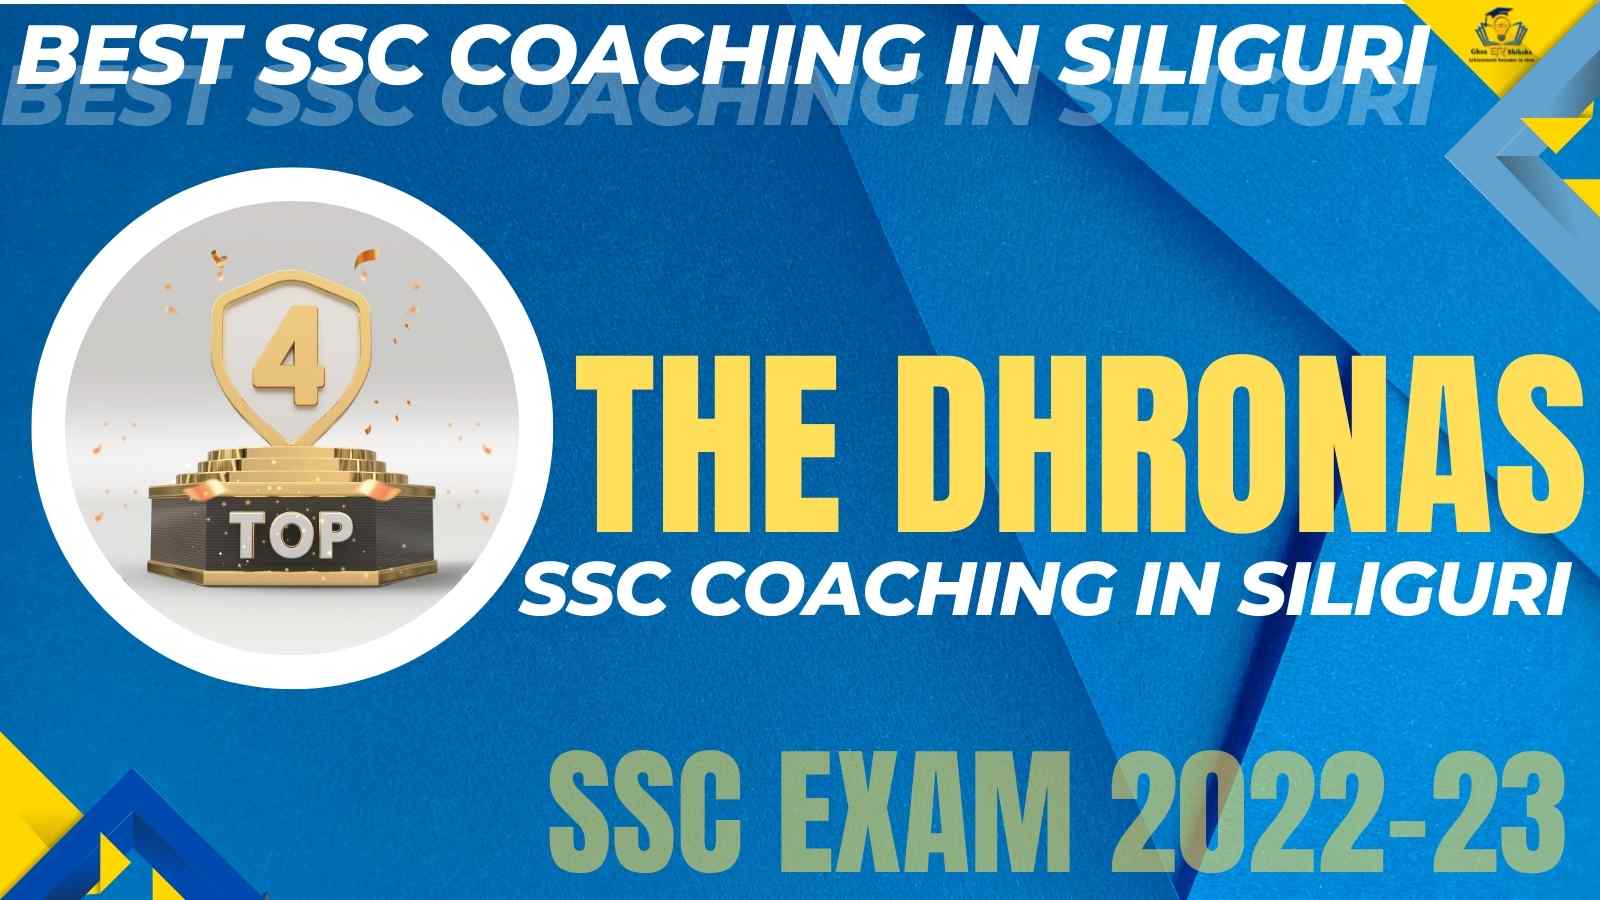 Best SSC Coaching Institute In Siliguri